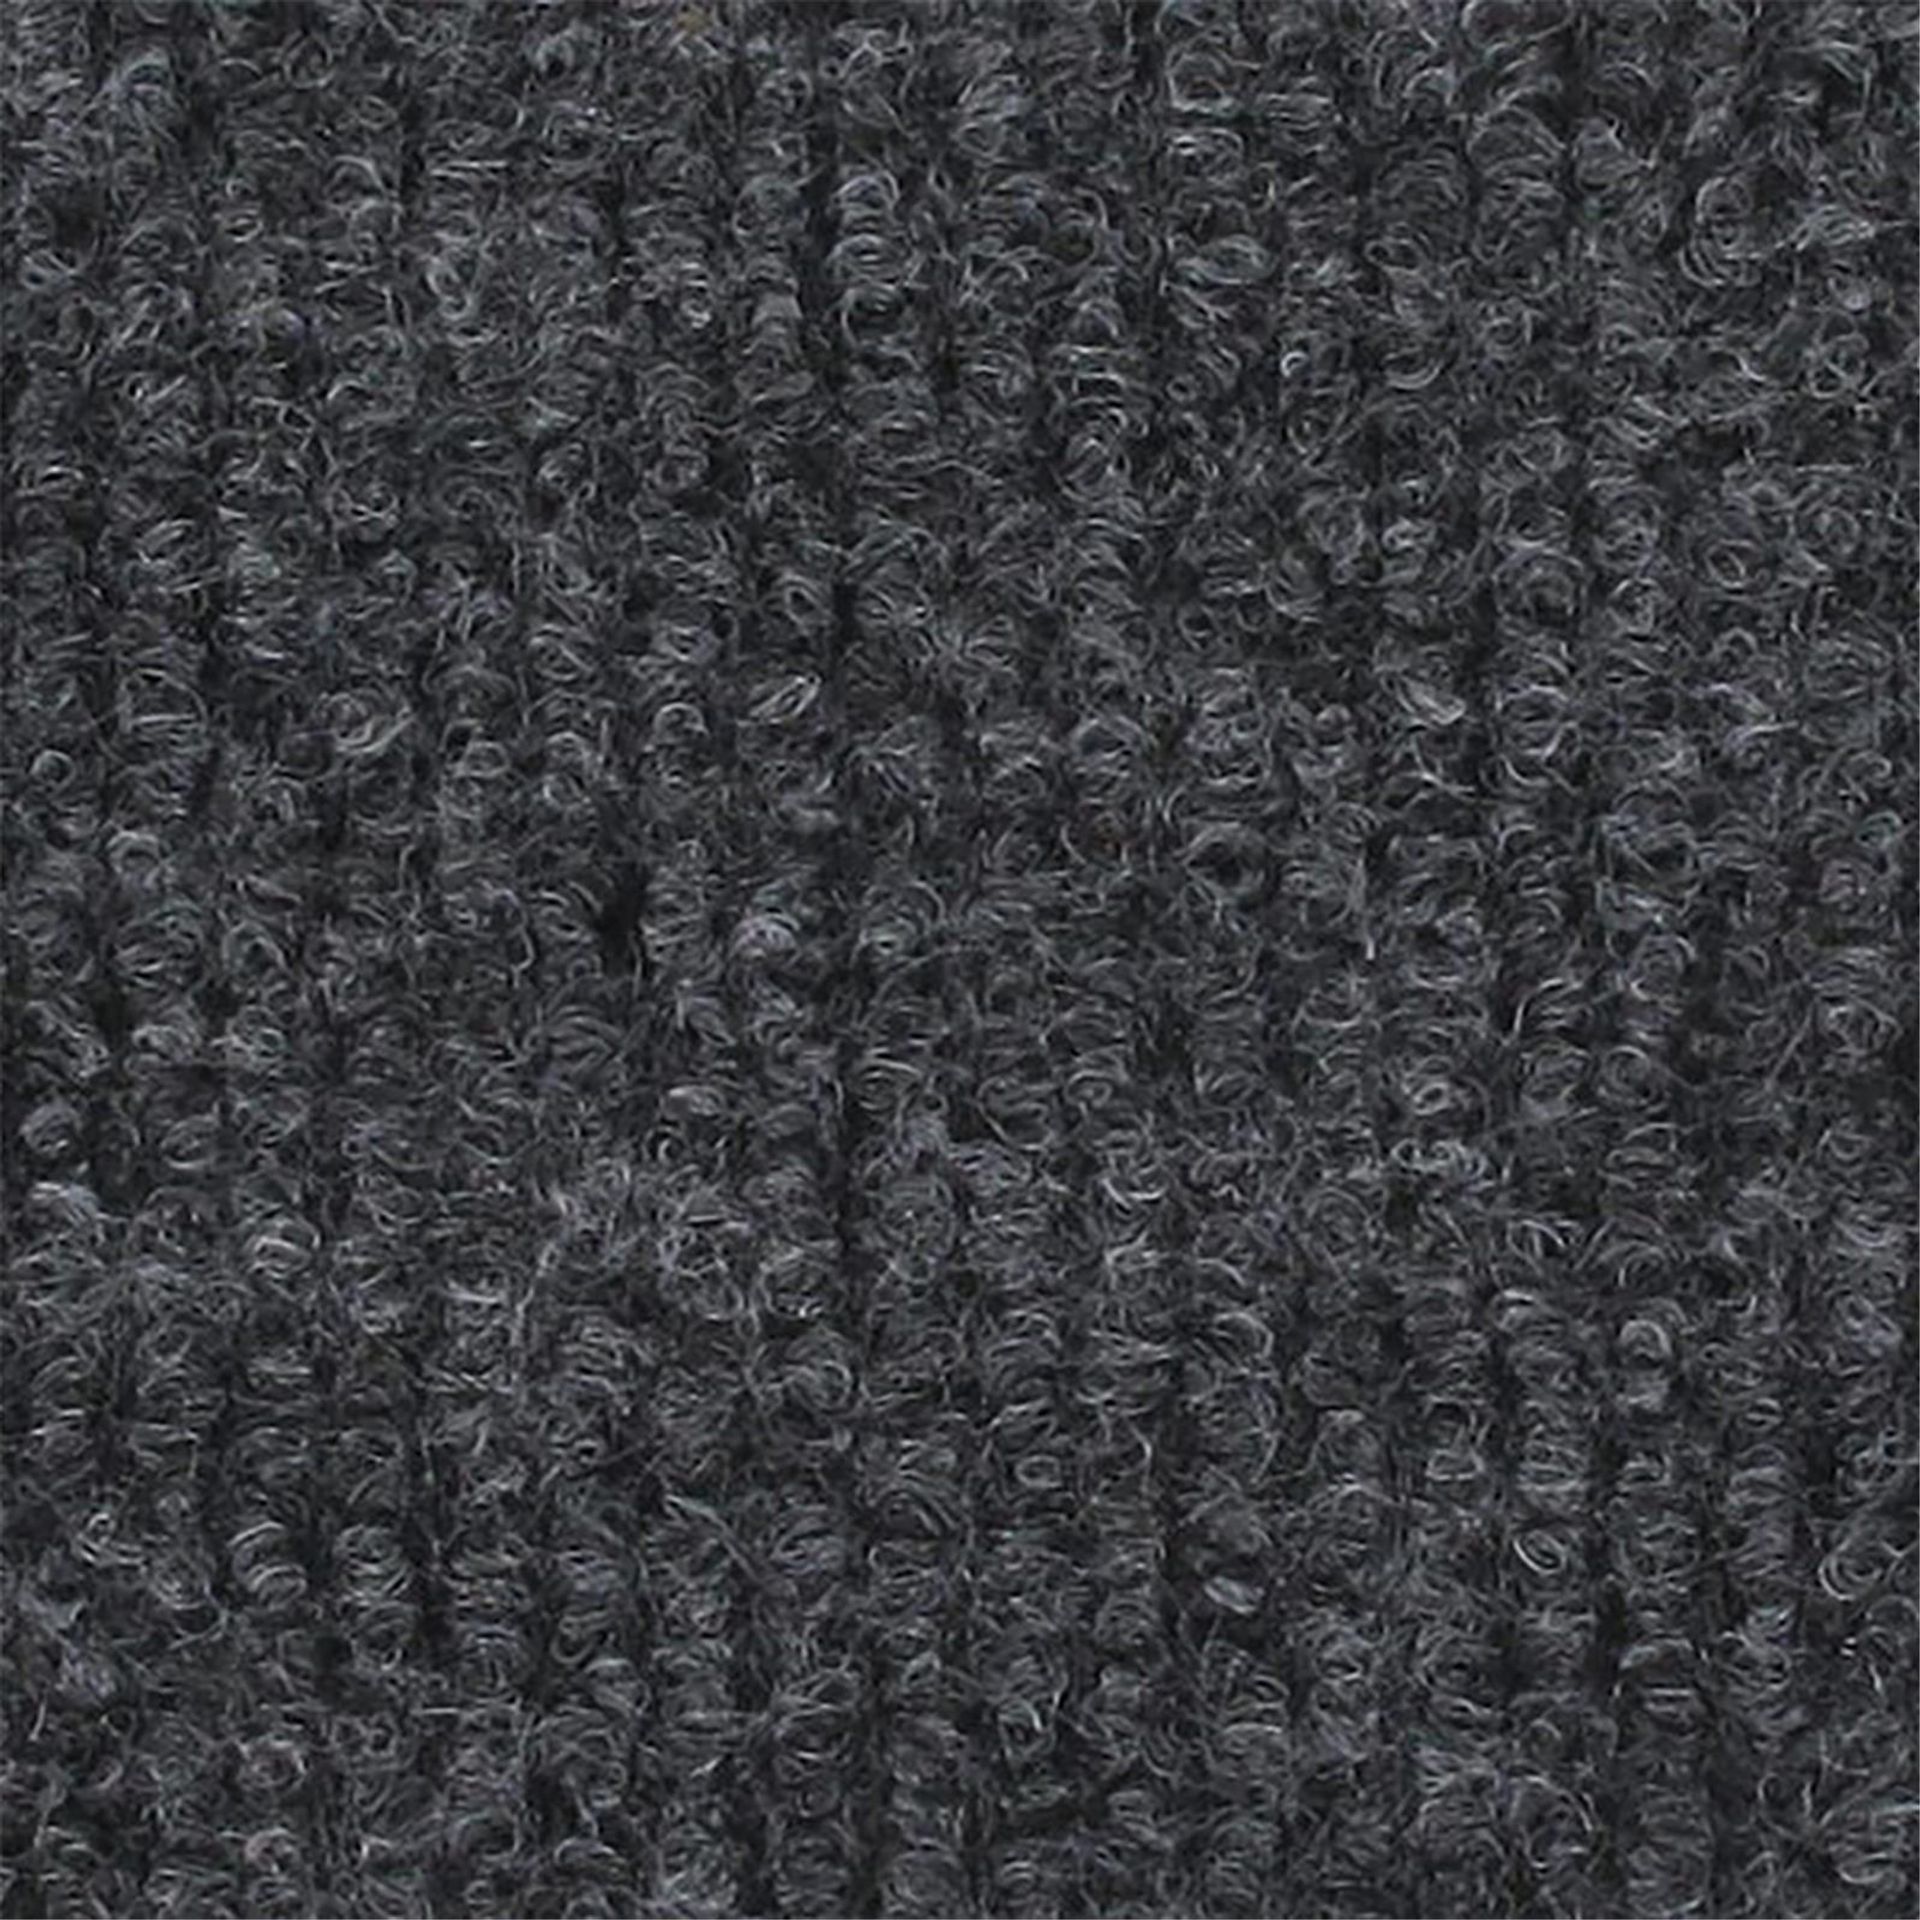 Messeboden Rips-Nadelvlies EXPOLINE Anthracite 0045 100qm ohne Schutzfolie - Rollenbreite 200 cm